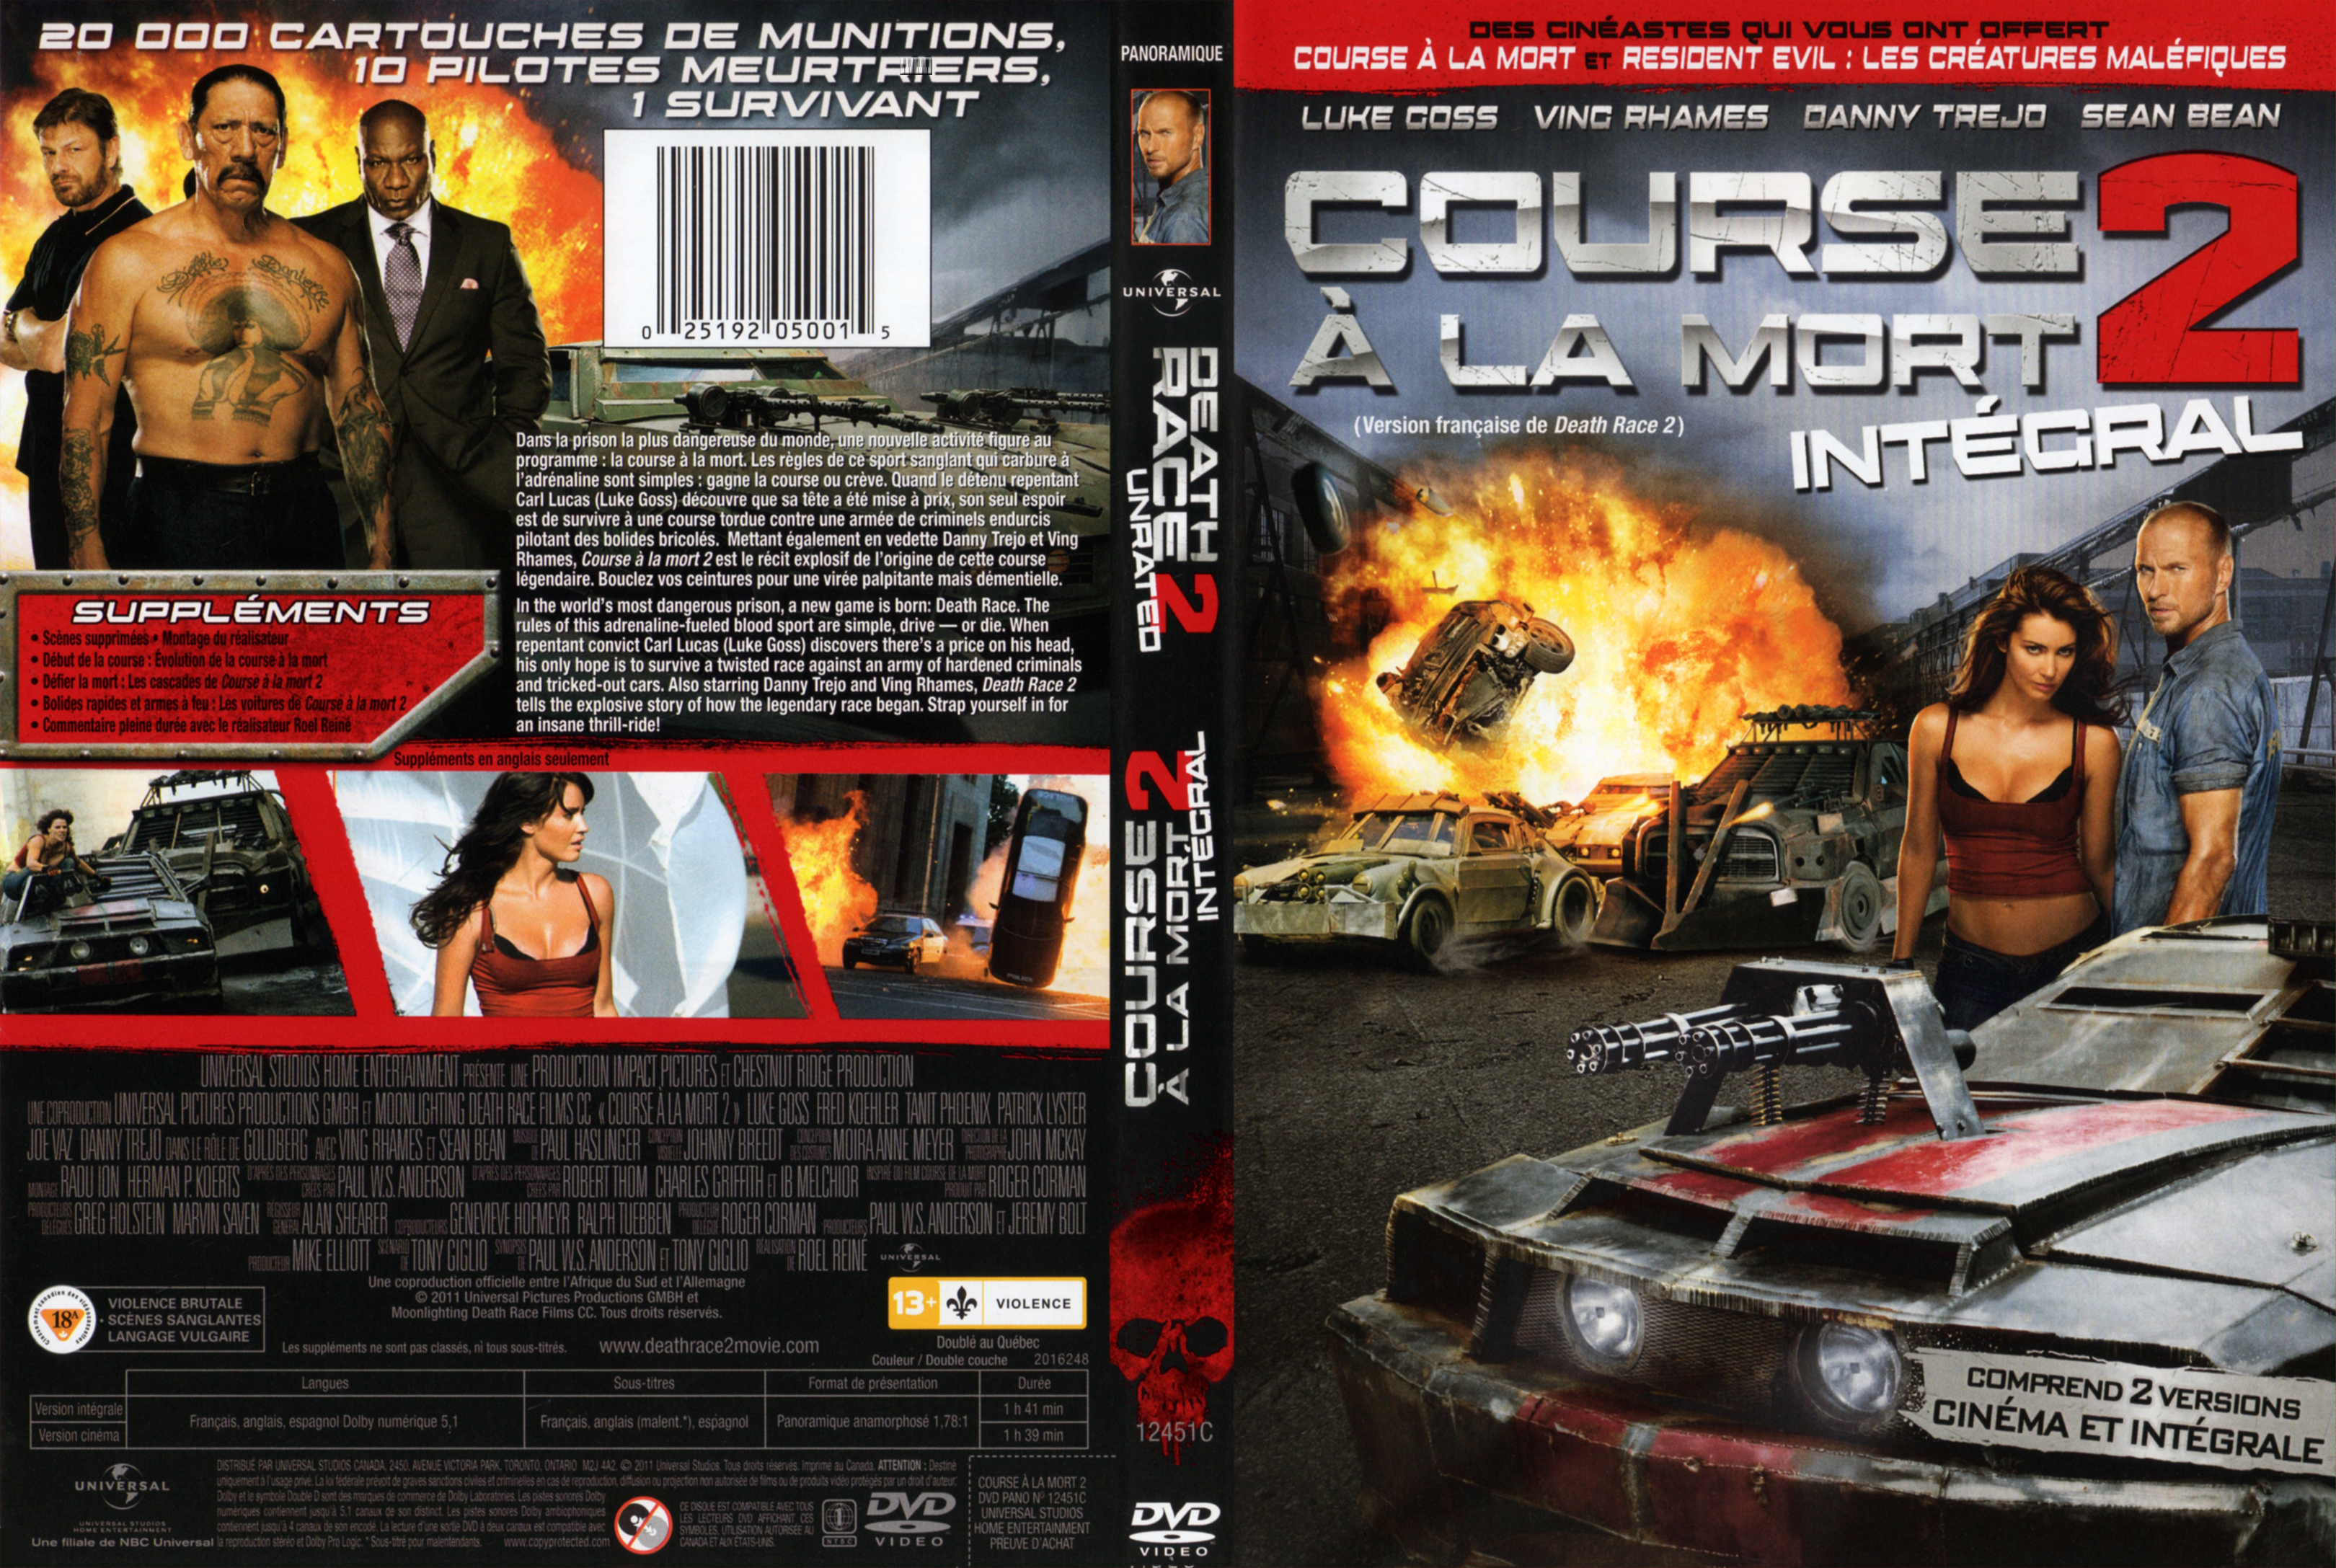 Jaquette DVD Course a la mort 2 - Death race 2 (Canadienne)